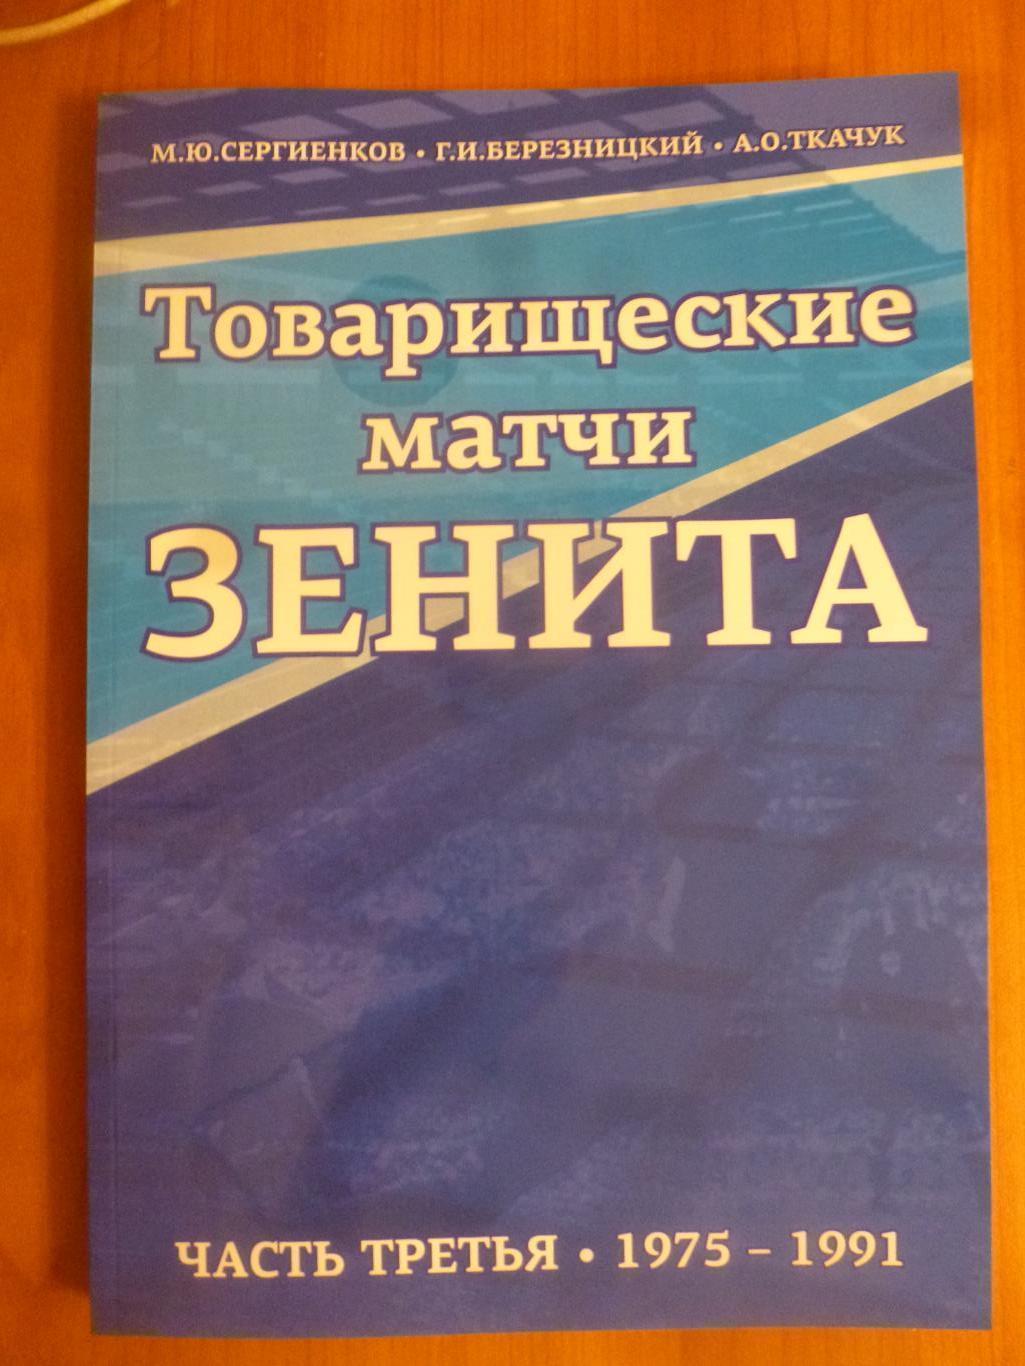 Книга Товарищеские матчи Зенита. Часть 3 (1975-1991).